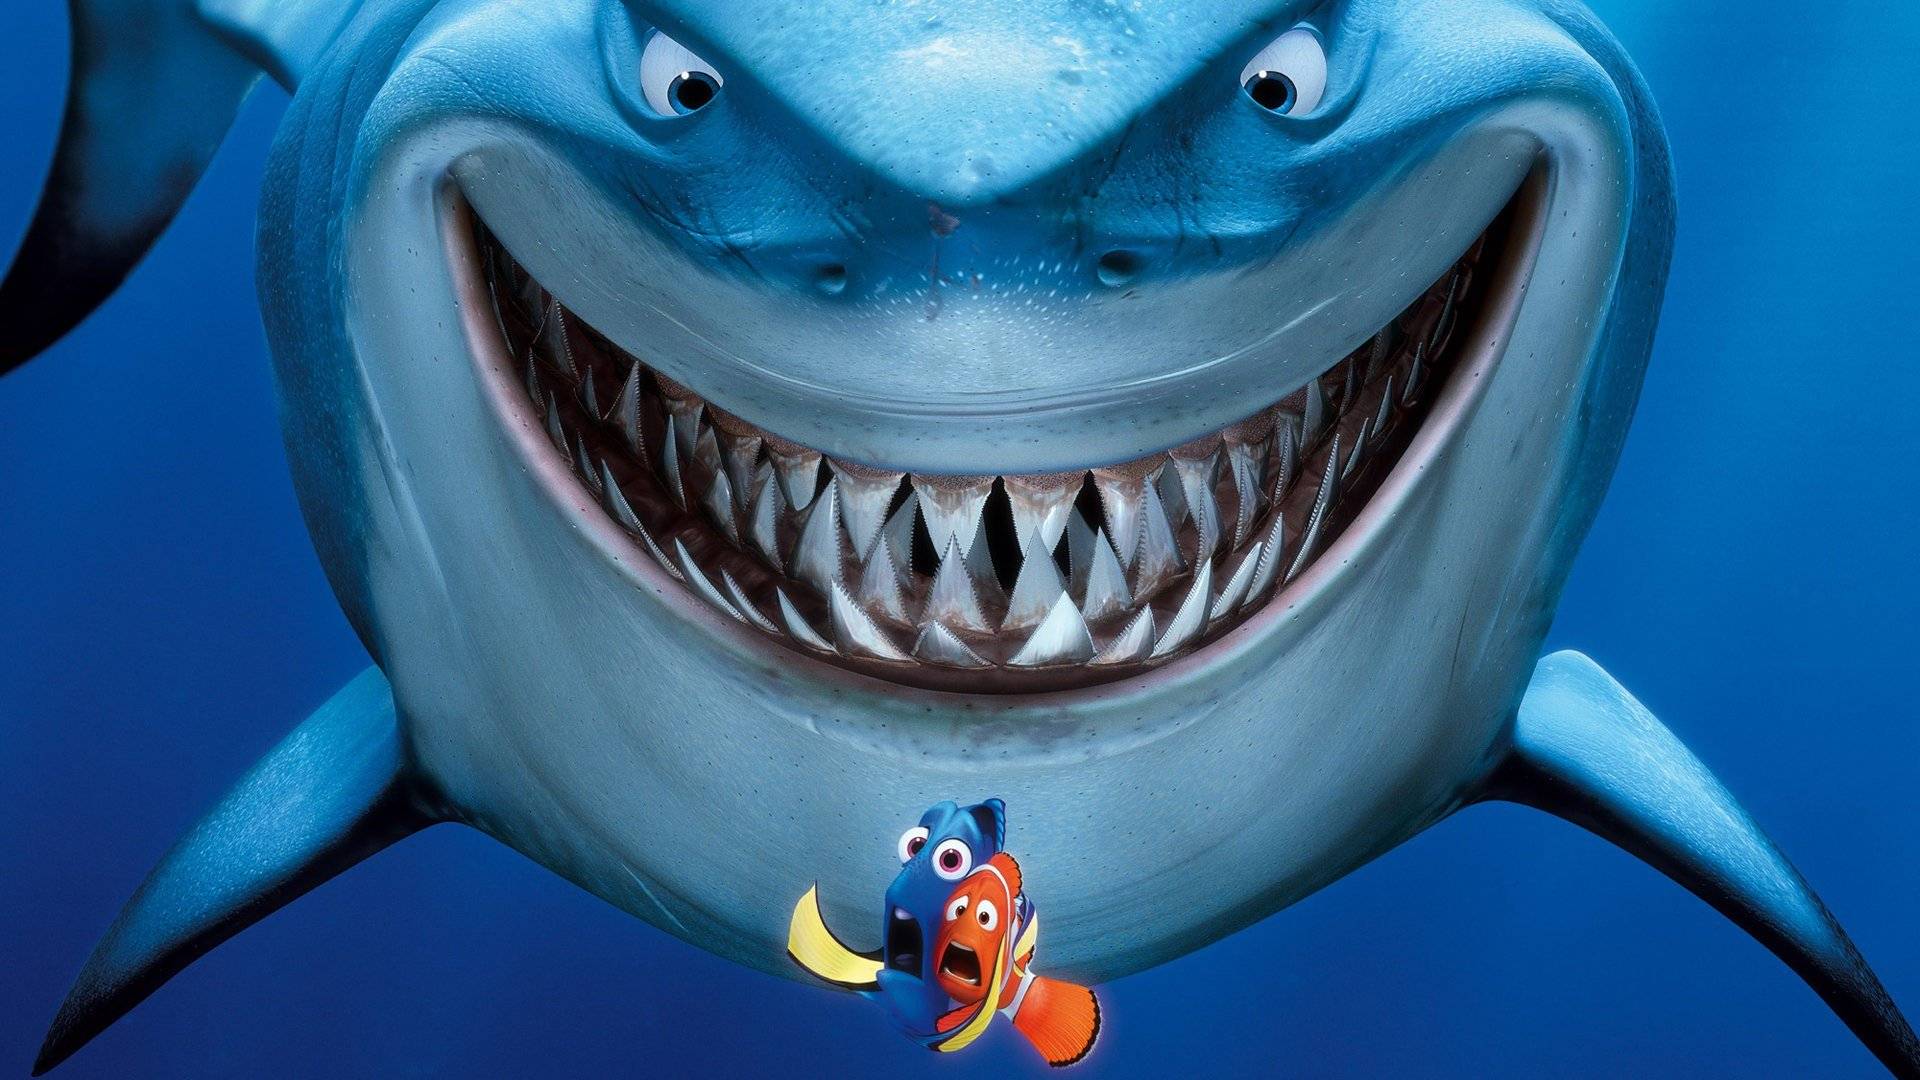 Finding Nemo / Finding Nemo (2003)